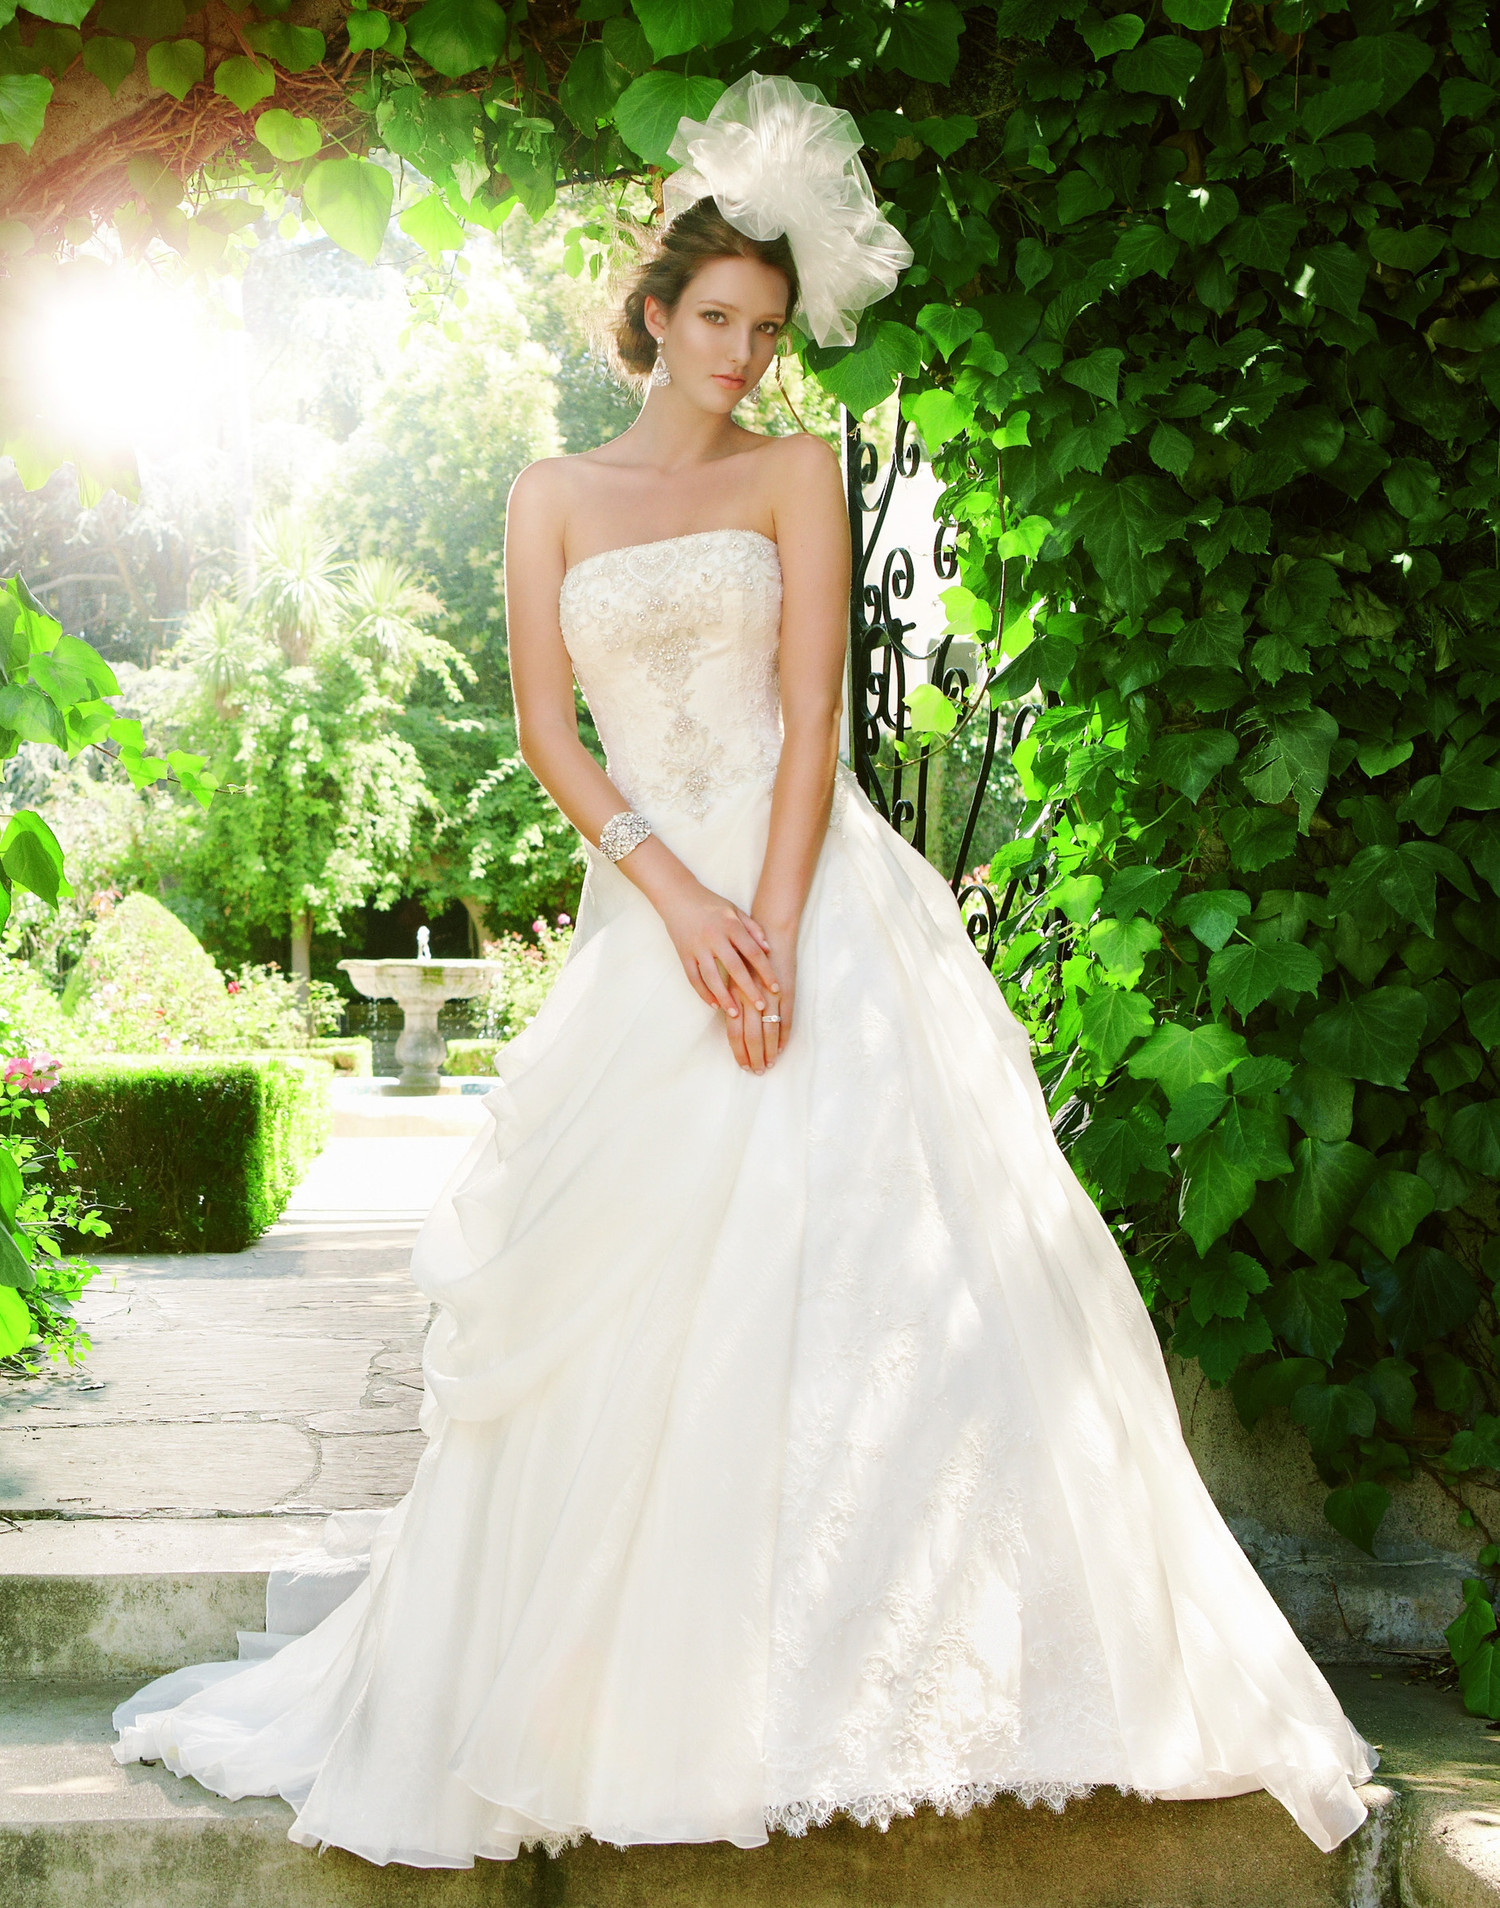 2021 Ball Gown Wedding Dress by Casablanca Bridal - WeddingWire.com